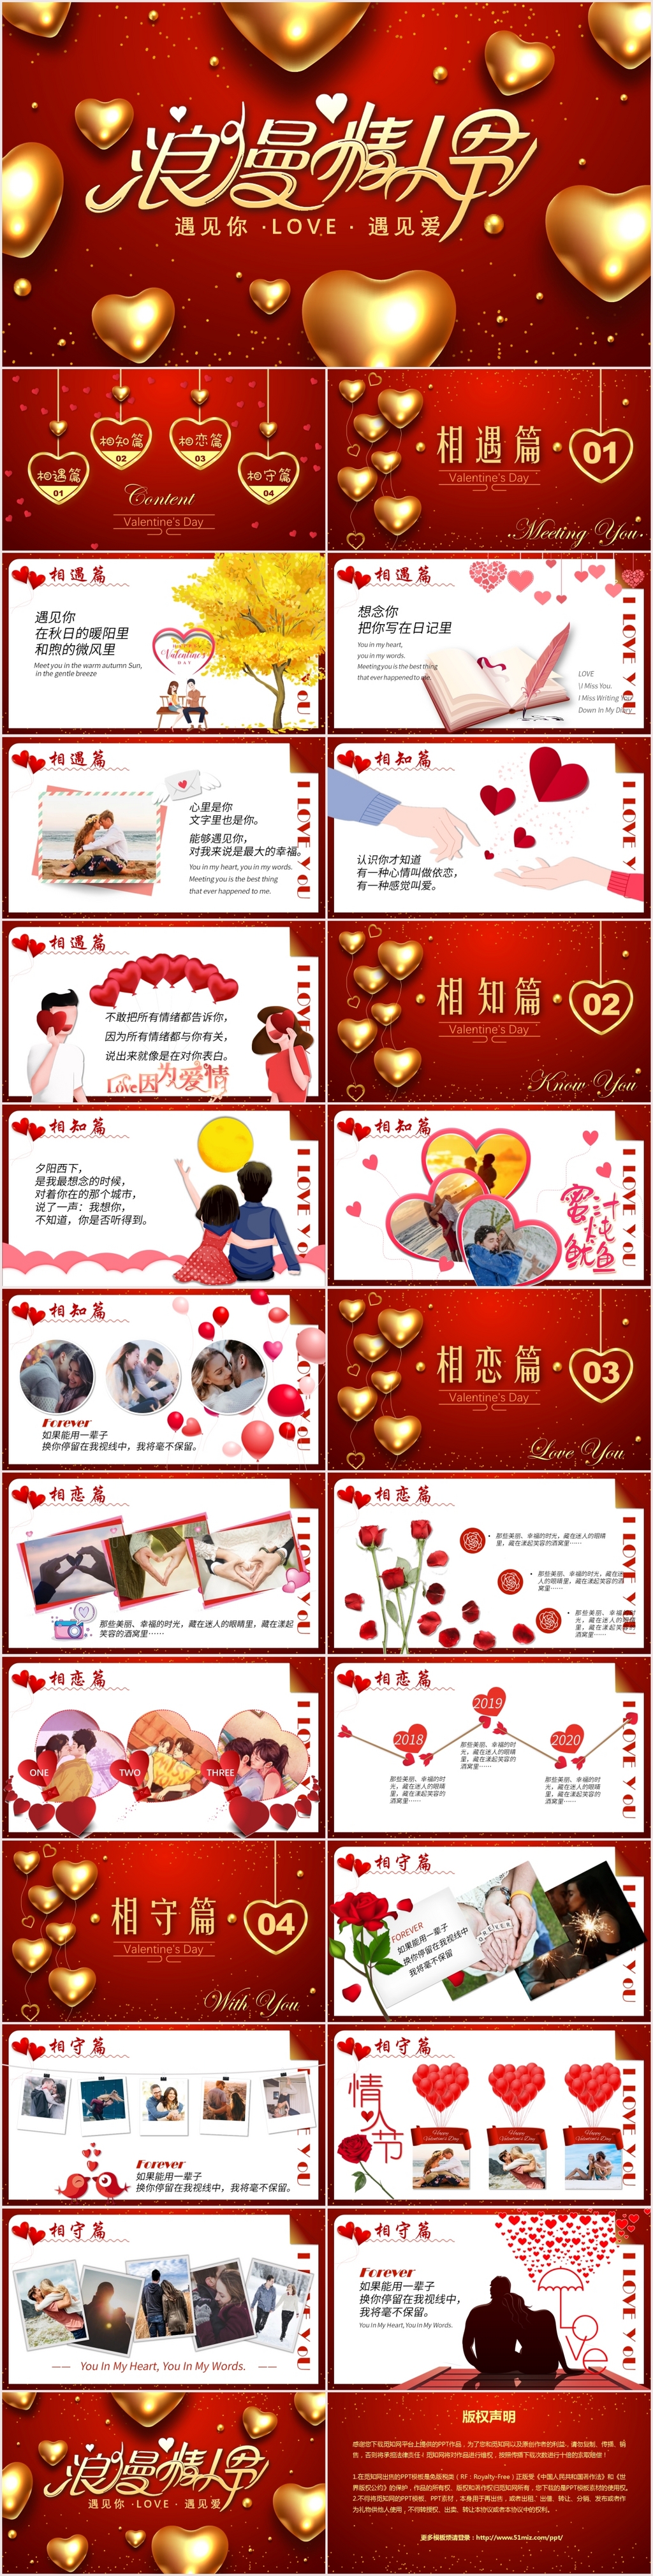 红色气球214告白浪漫情人节主题ppt模板